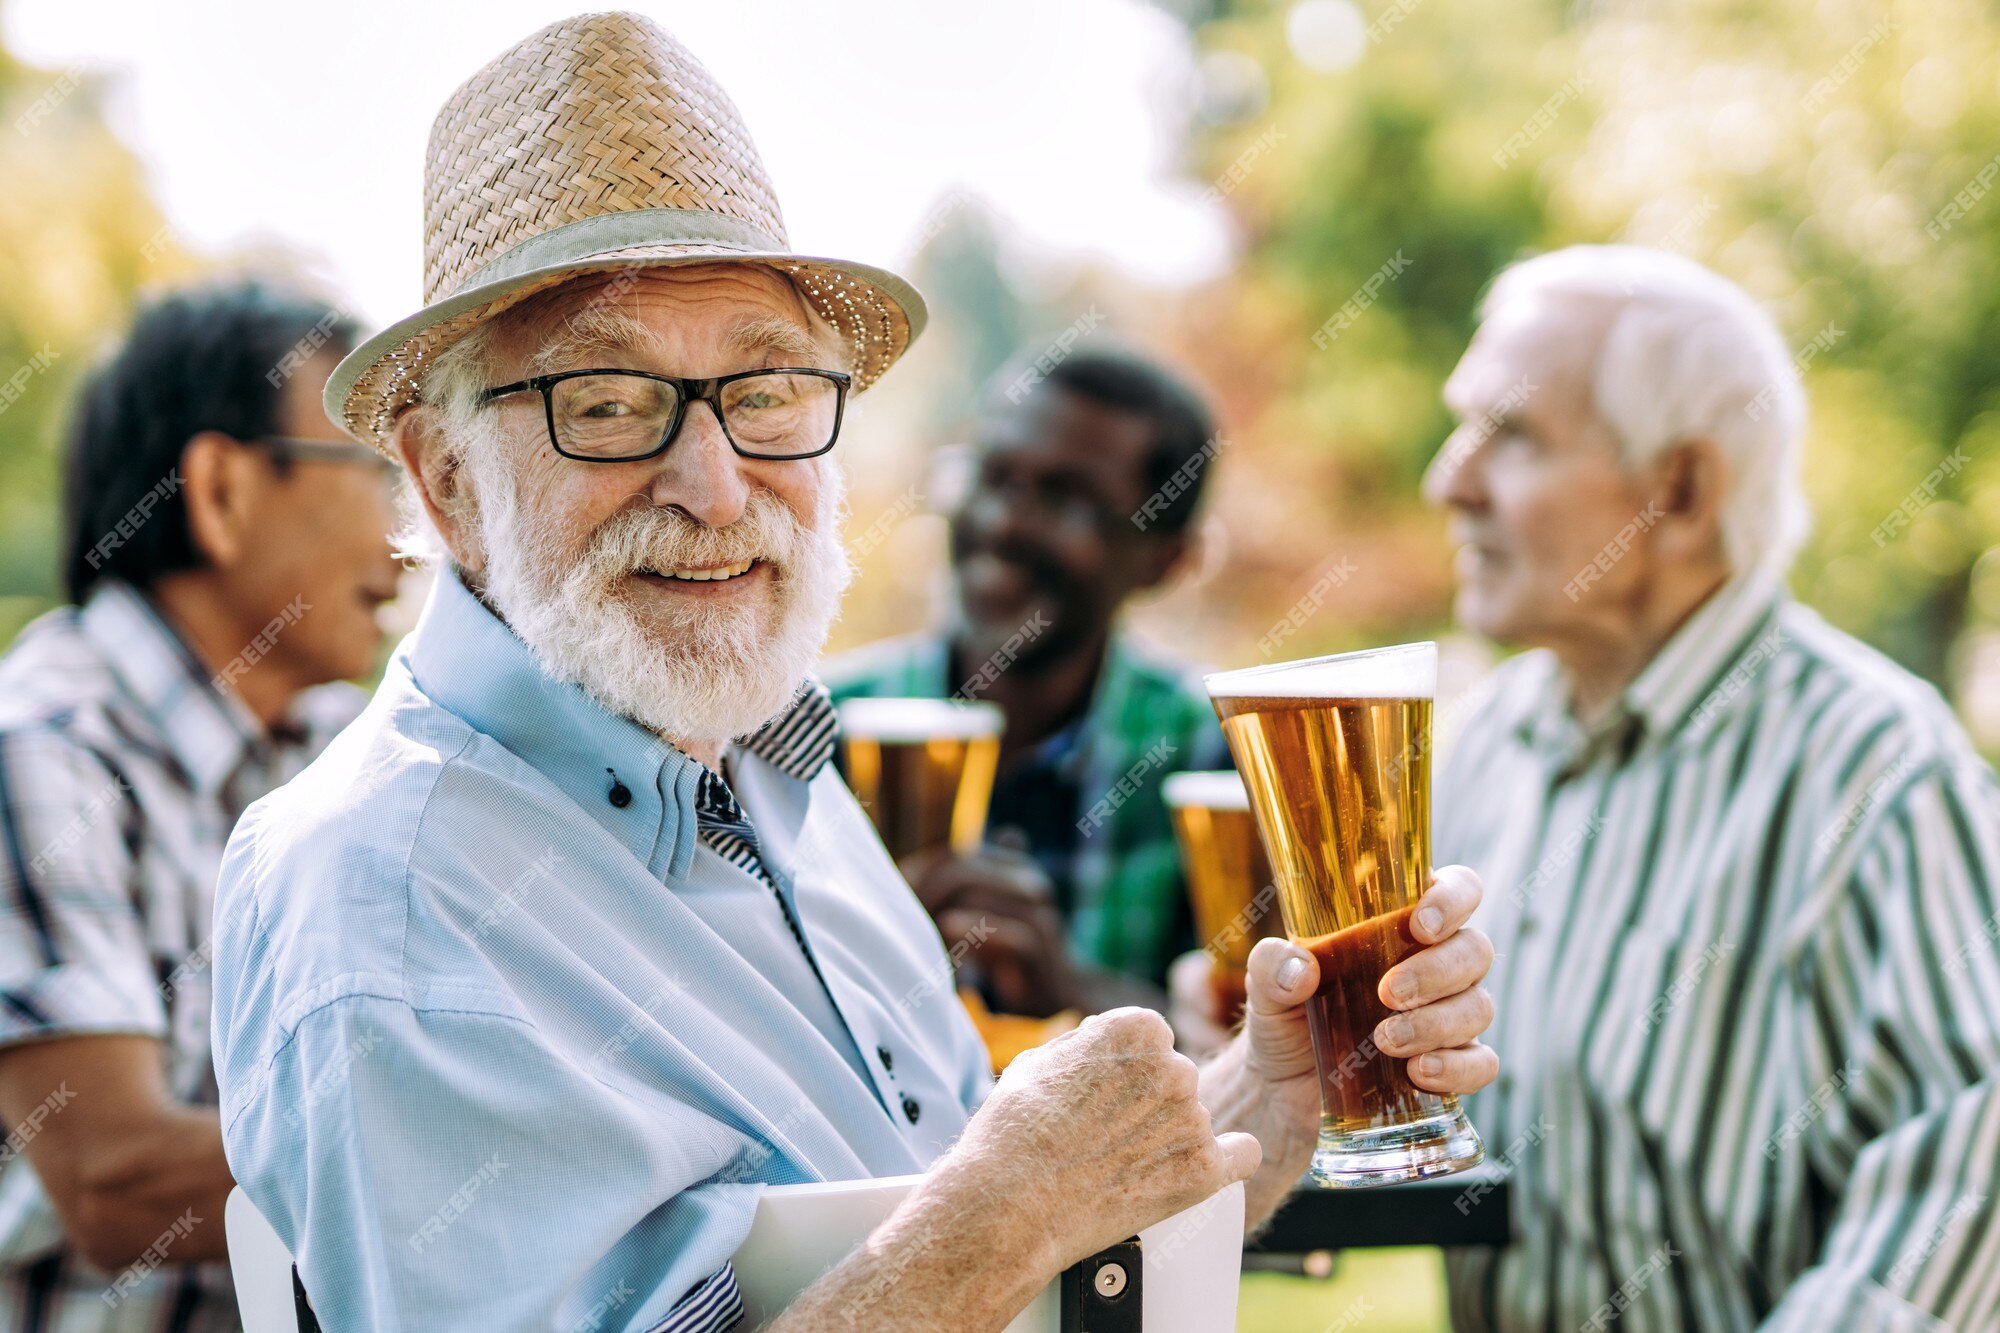 Sinuca proporciona união entre amigos e cerveja.